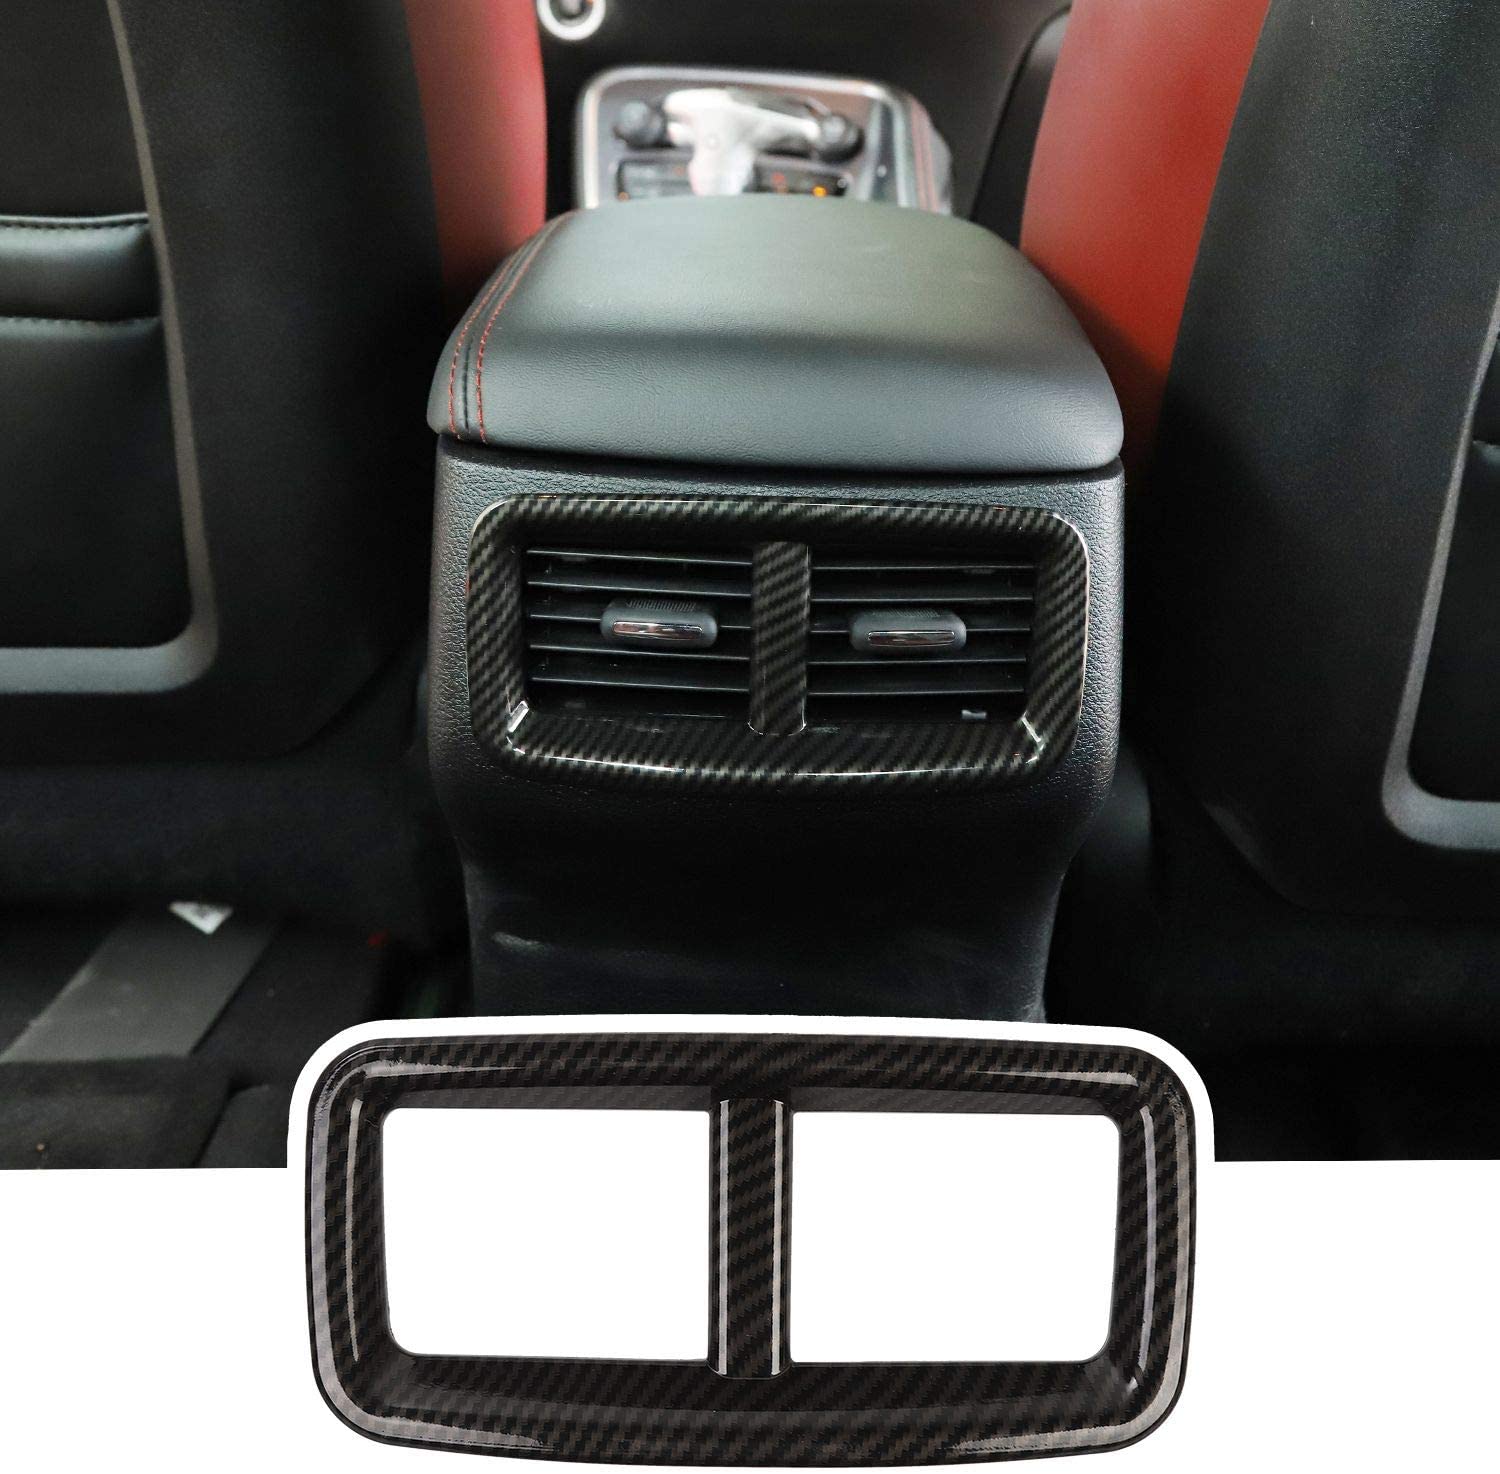 JeCar Rear Back Vent Outlet Trim Cover Air Conditioner Cover for 2015-2020 Dodge Challenger (Carbon Fiber) (Black)